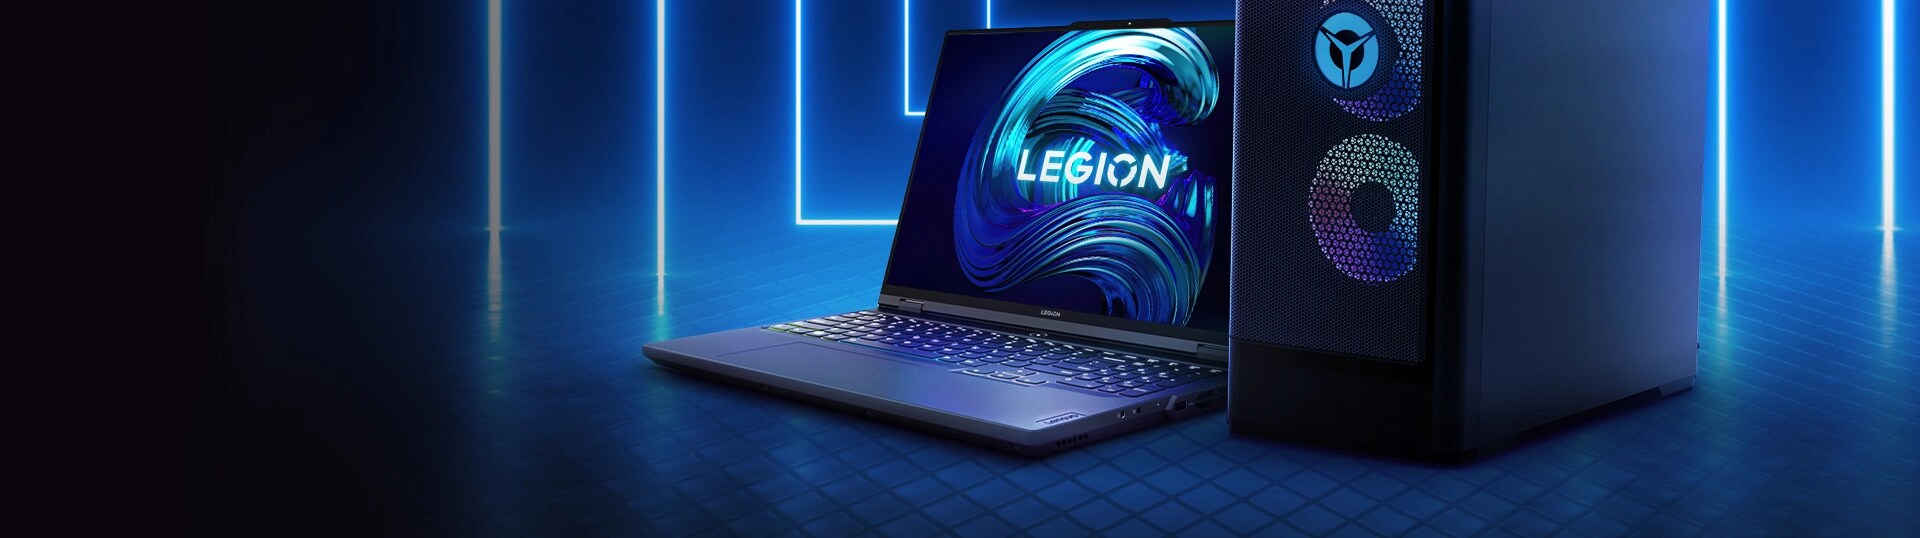 Legion gaming desktop & laptop shown side by side.